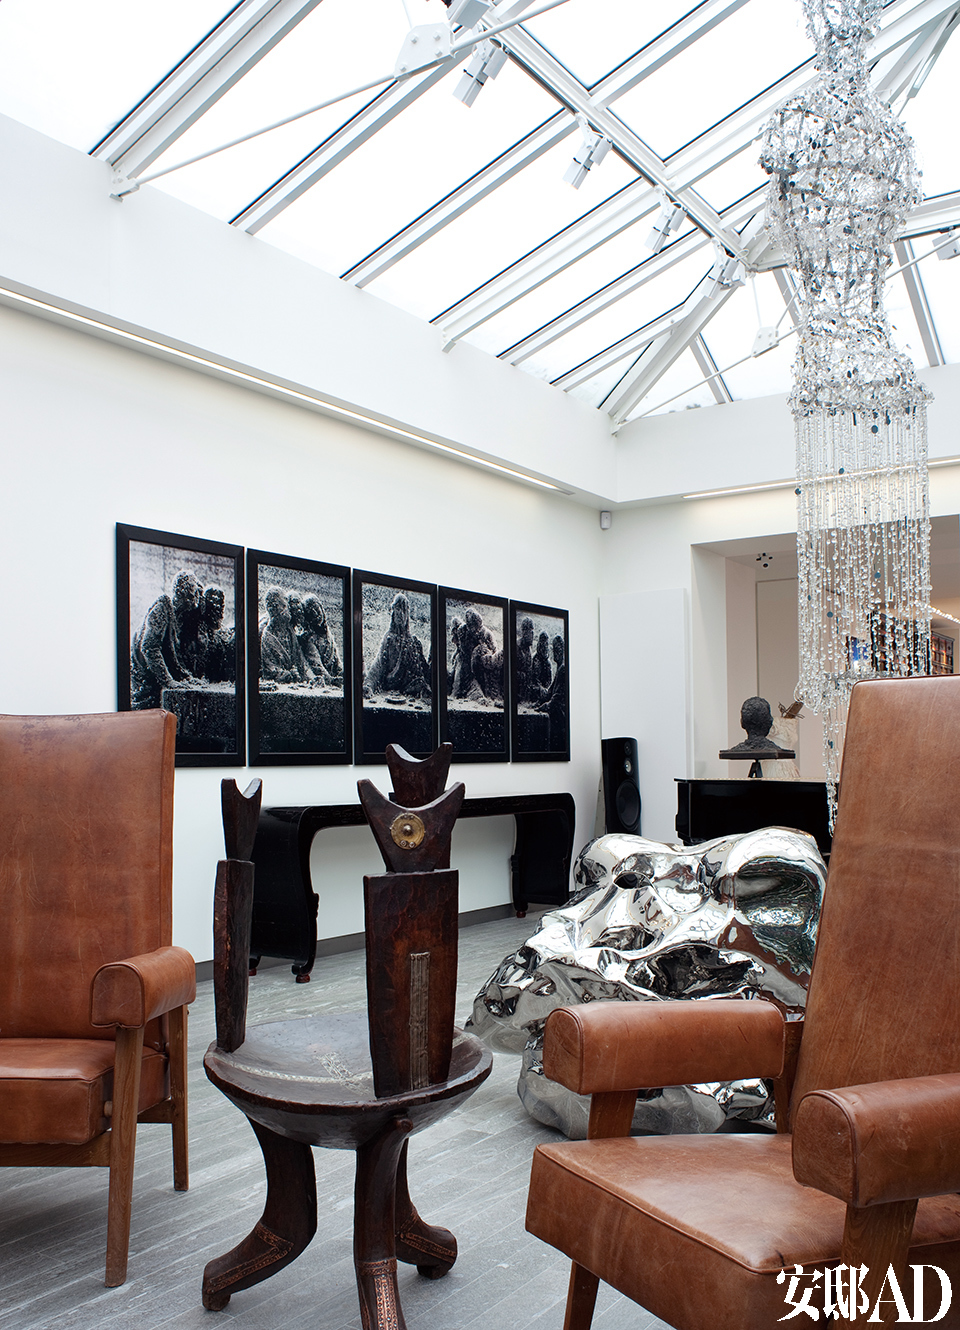 主人对中国艺术家的关注与喜爱一目了然，张洹、展望、张晓刚的作品与众多世界级大师的作品共处一室，毫不突兀。 画廊细节。Chandigarh Judge系列皮木制扶手椅来自Pierre Jeanneret；中间的非洲椅子源自埃塞俄比亚，制成于20世纪20年代； 靠左边的墙面上，挂着Andres Serrano的系列画作：《Immersions，Black Support I to IV》。